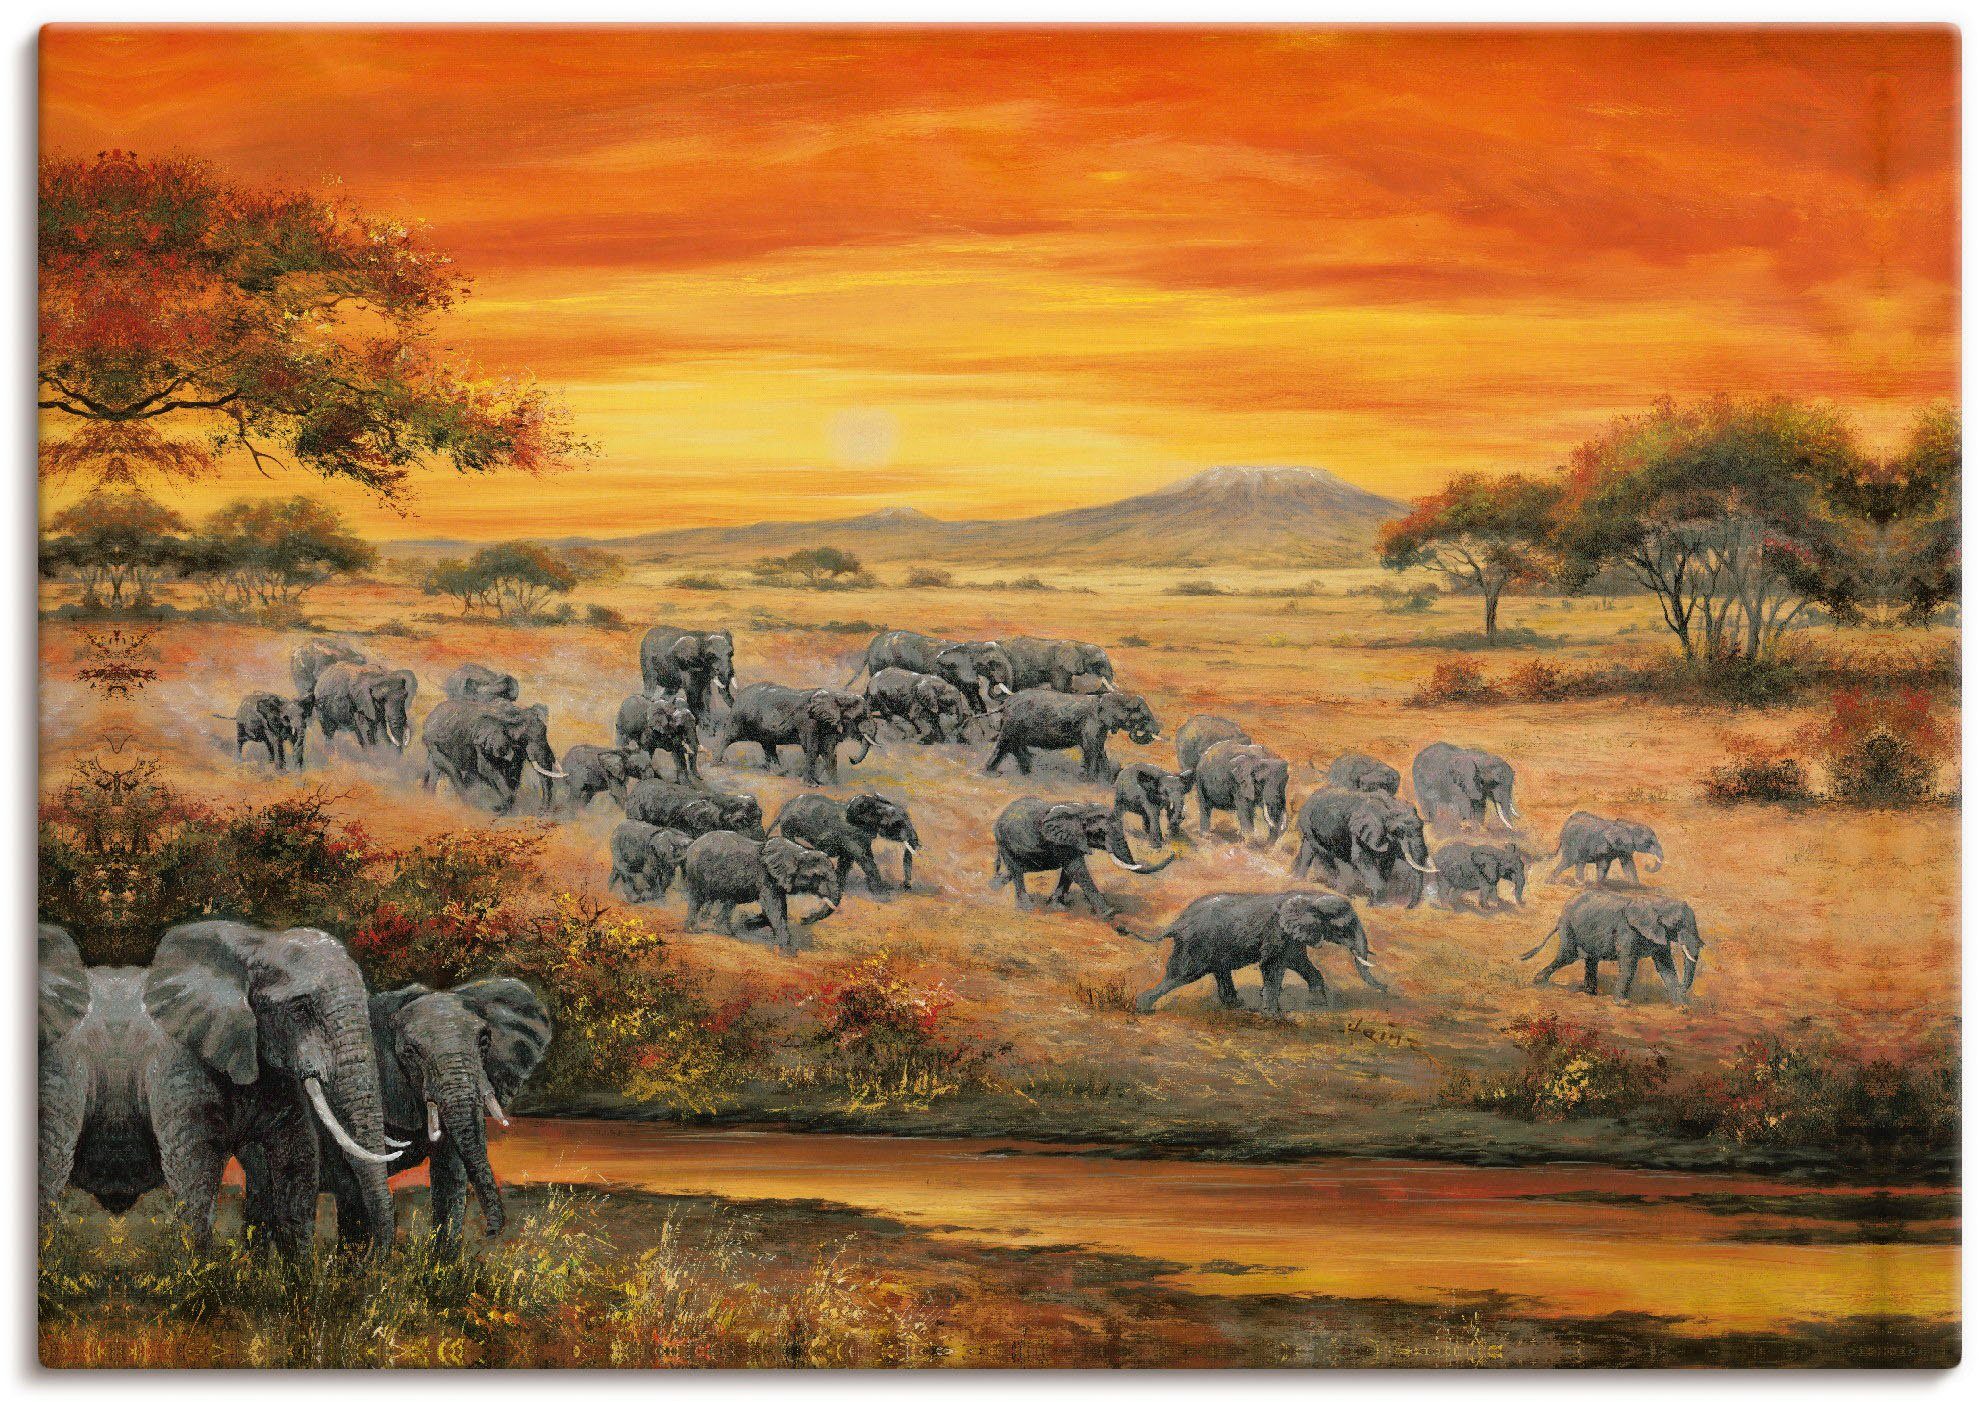 Artland Artprint Wilde leven - olifanten in vele afmetingen & productsoorten - artprint van aluminium / artprint voor buiten, artprint op linnen, poster, muursticker / wandfolie oo